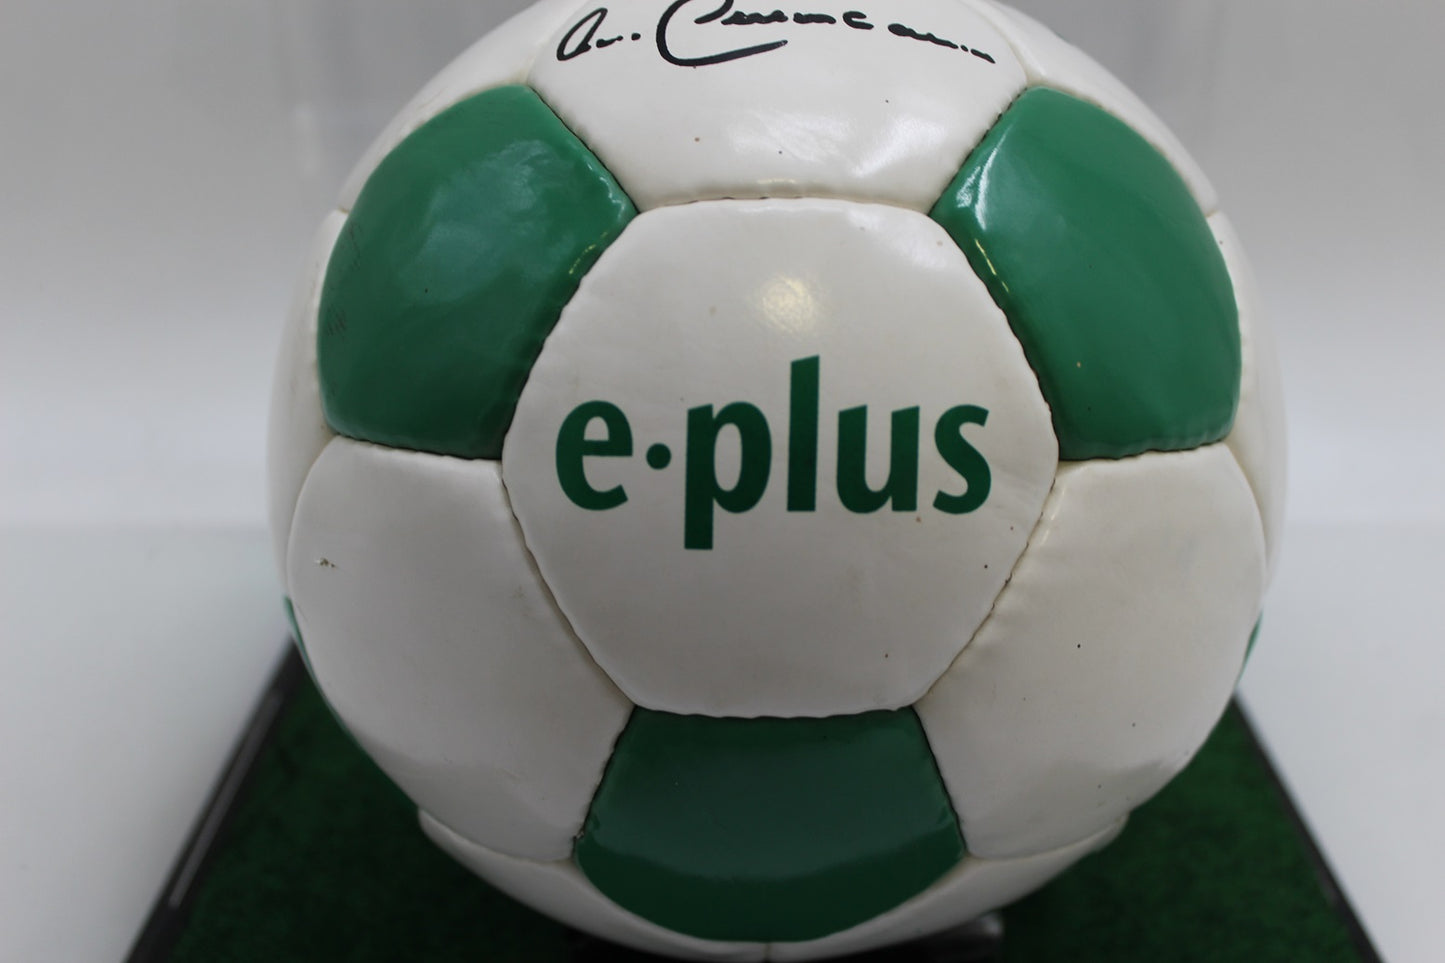 Fußball Franz Beckenbauer signiert mit Widmung Kaiser Neu COA Autogramm